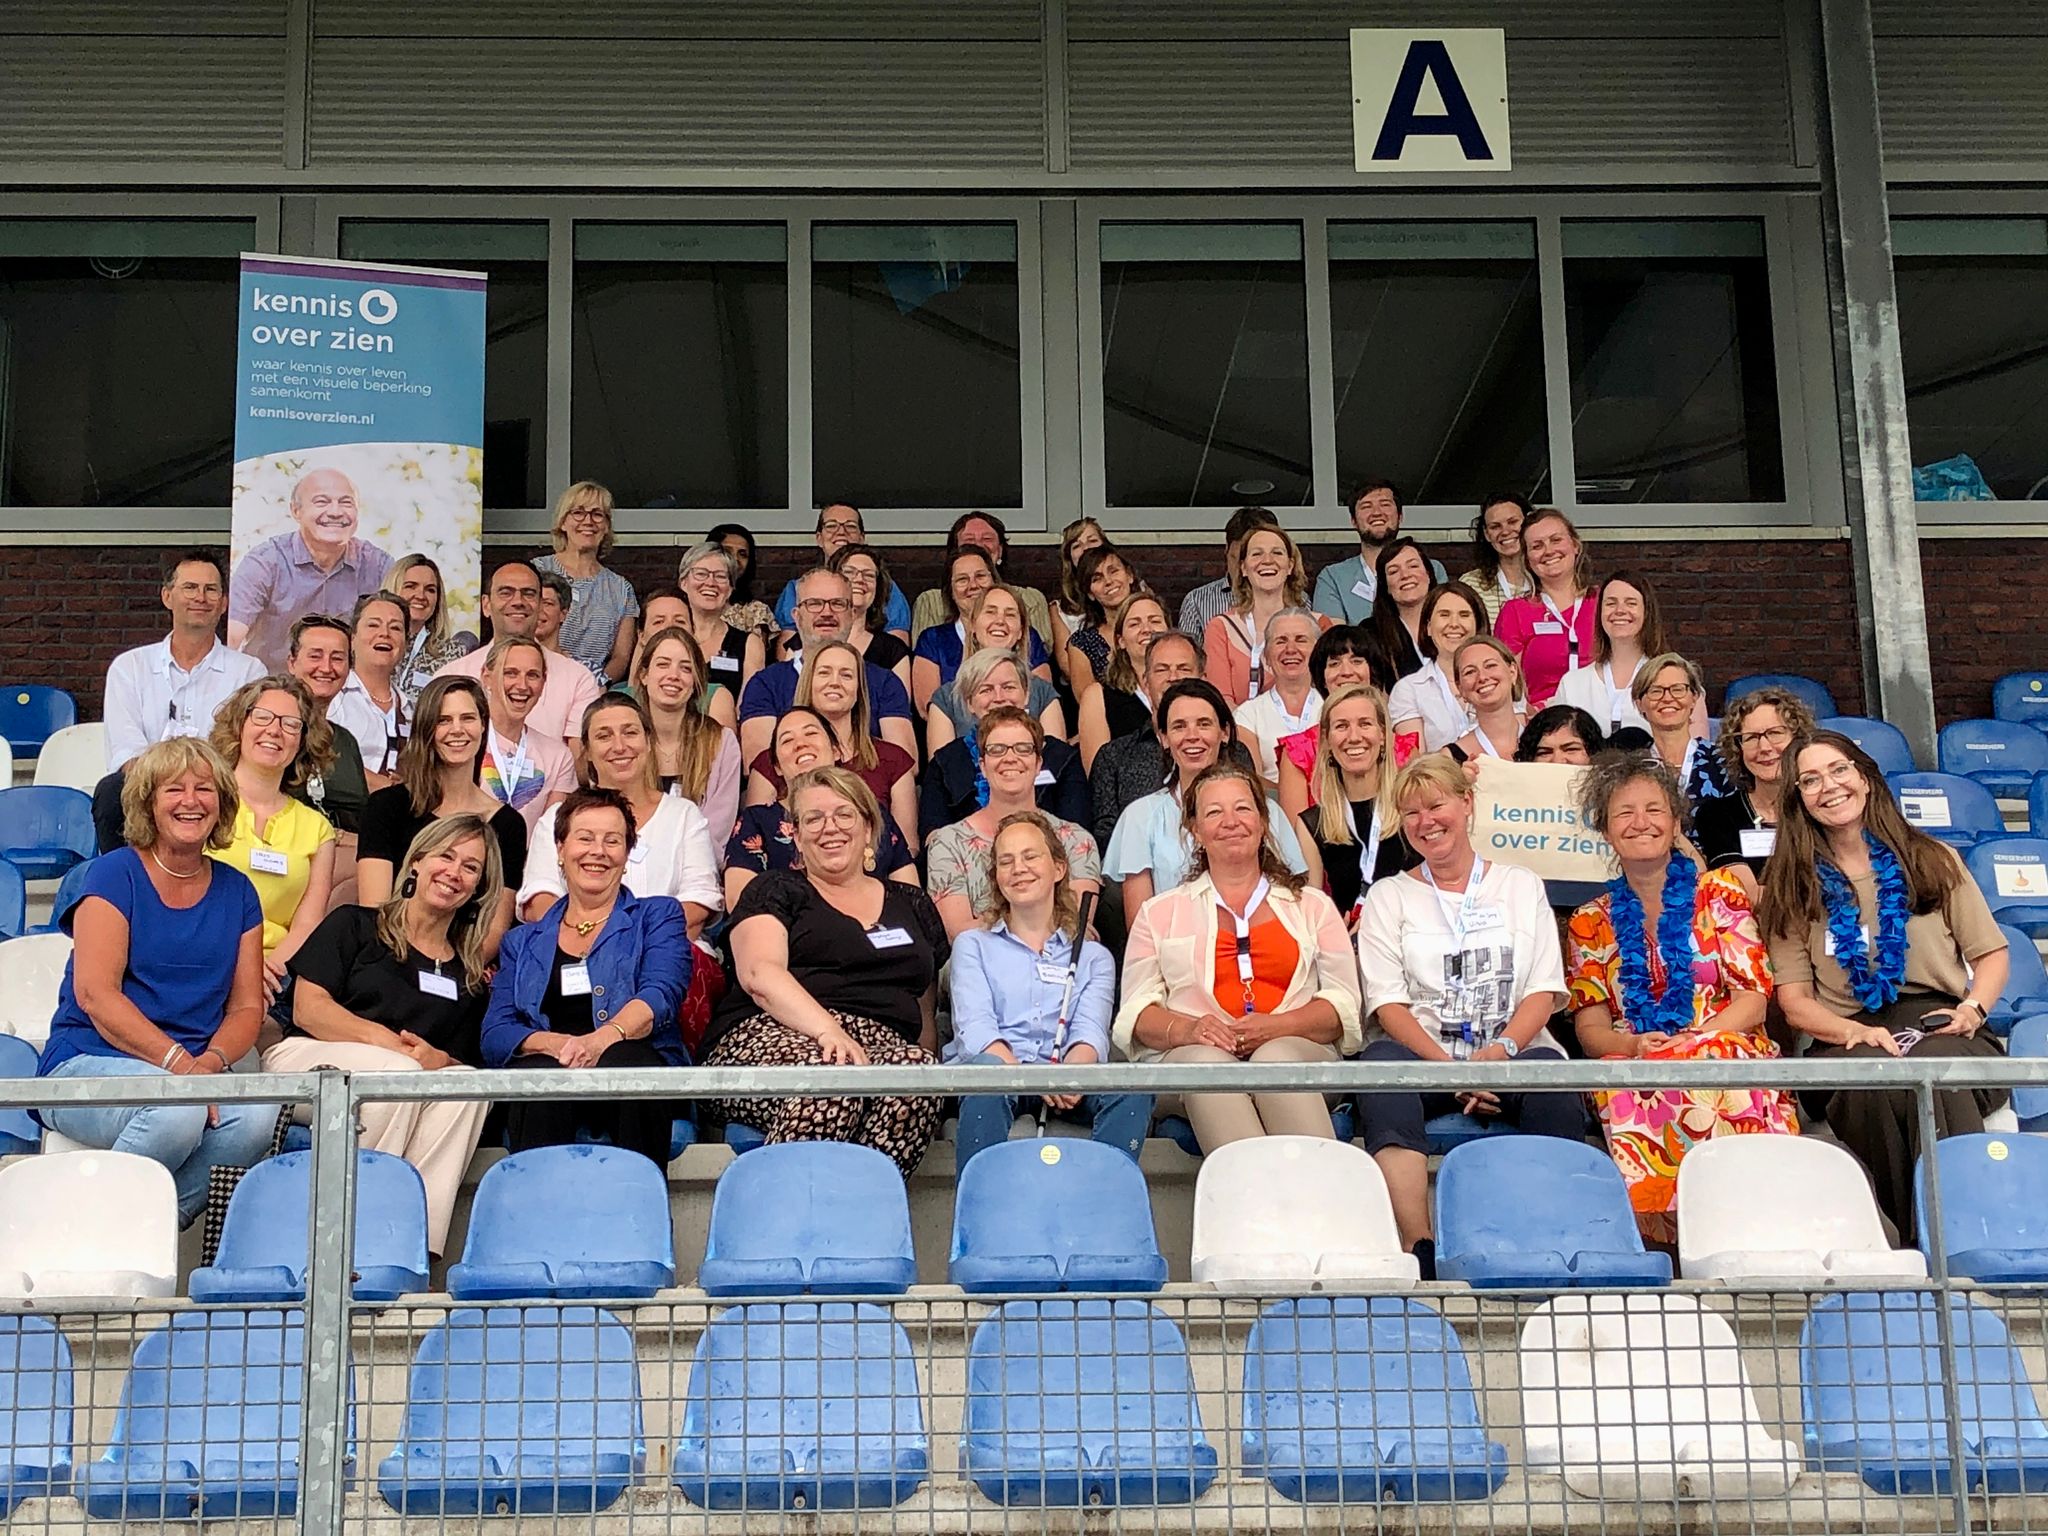 groepsfoto op de tribune van SV Spakenburg met alle betrokkenen van Kennis over Zien